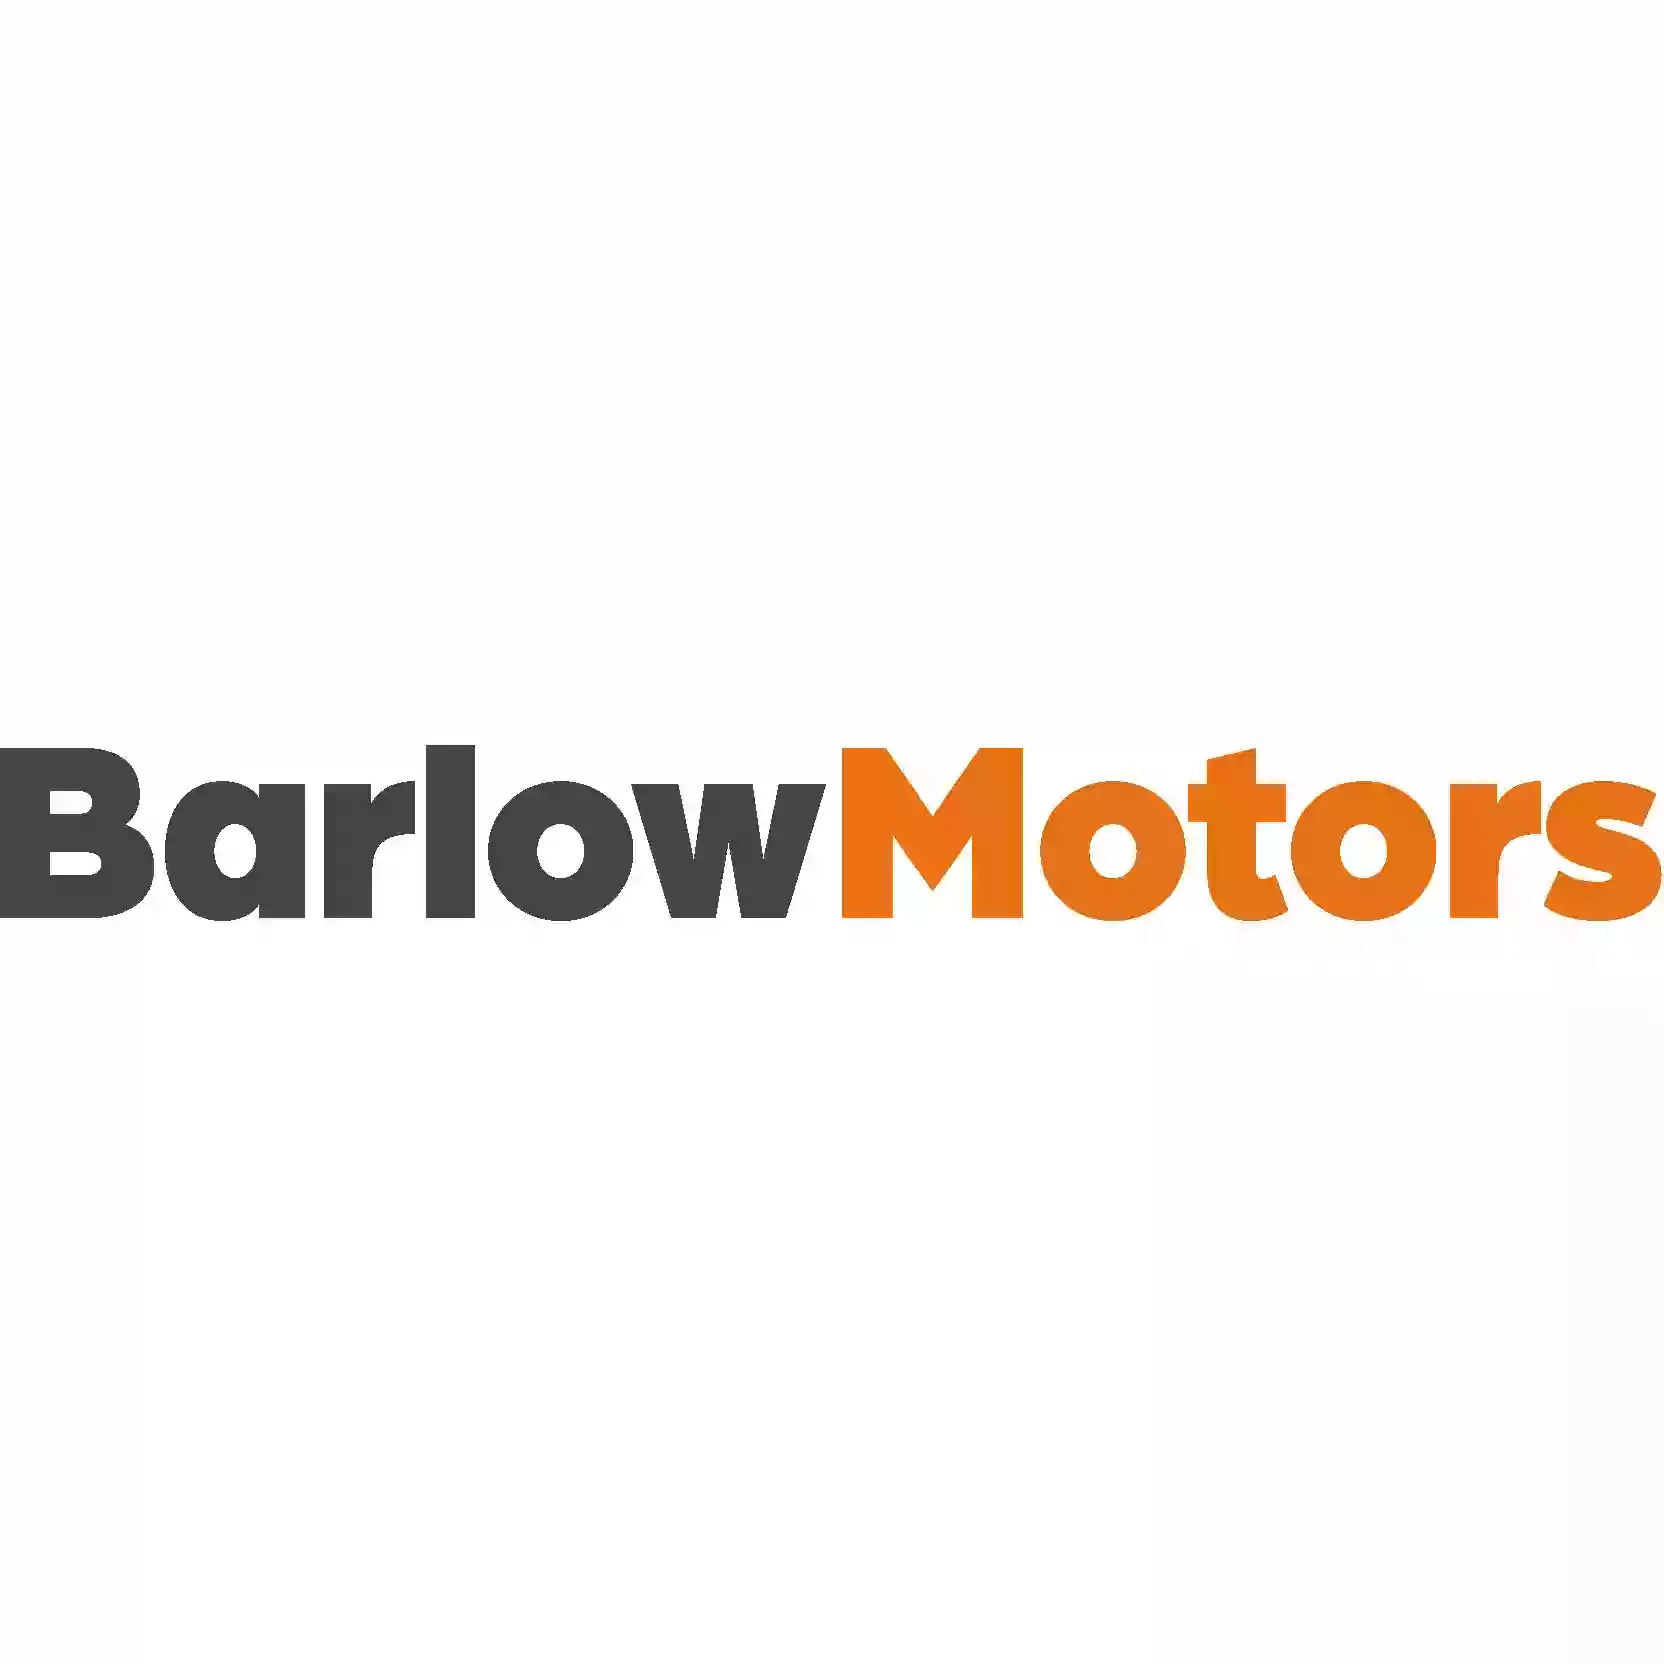 Stoke SEAT & Barlow Motors Ltd.